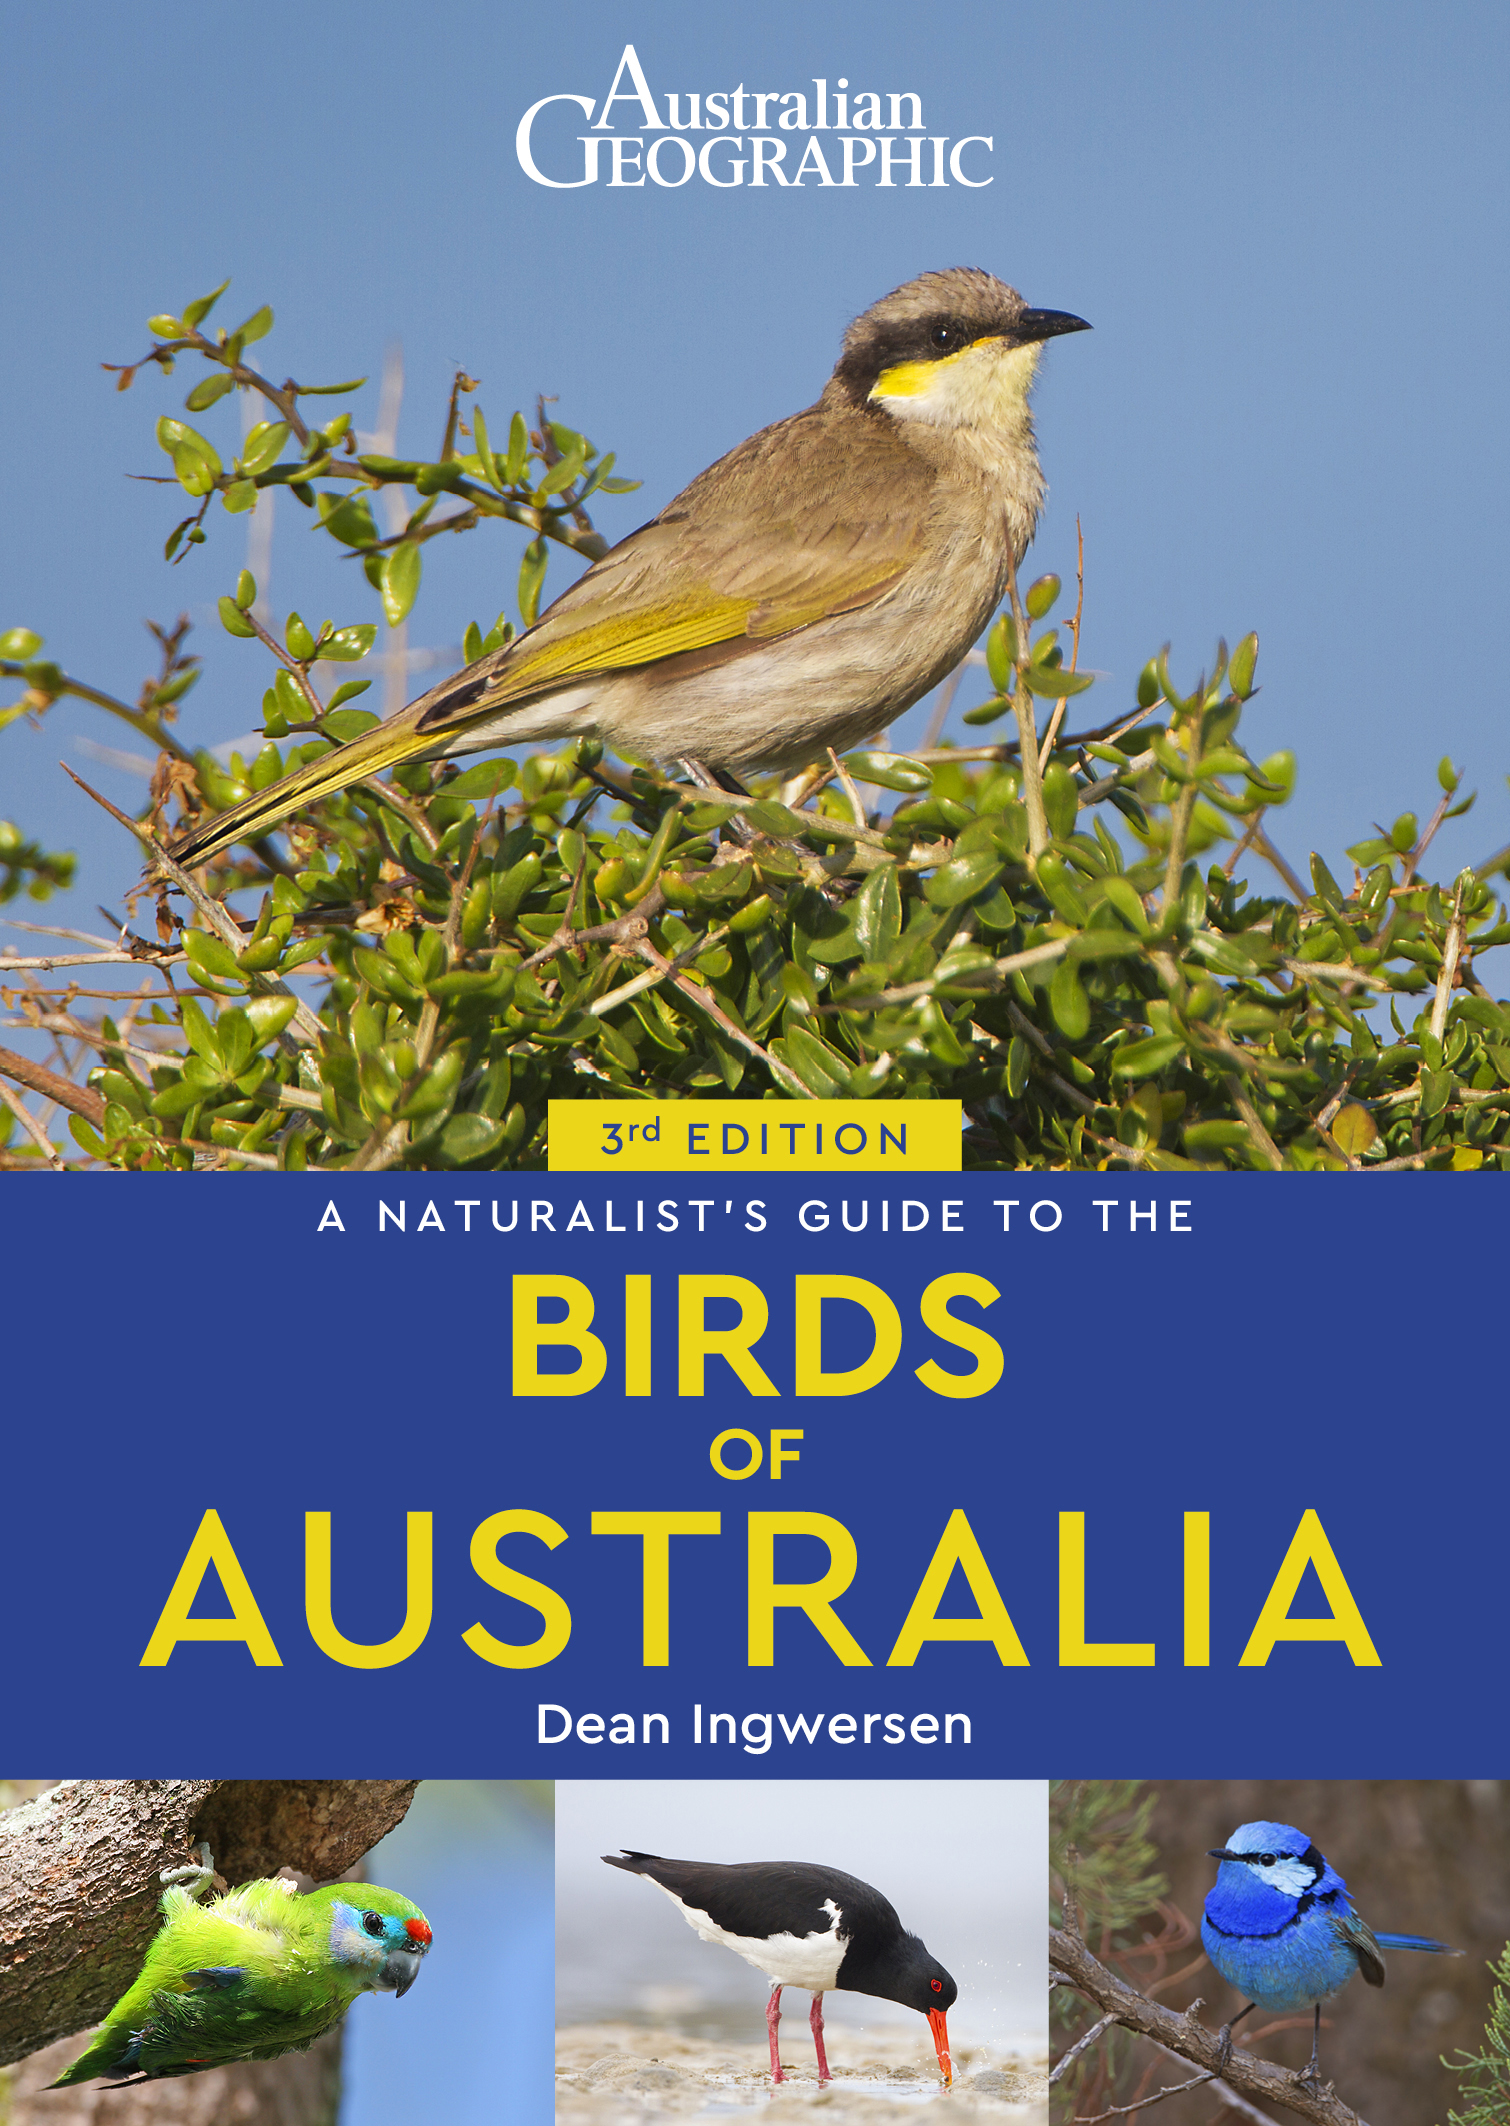 research on birds in australia ielts